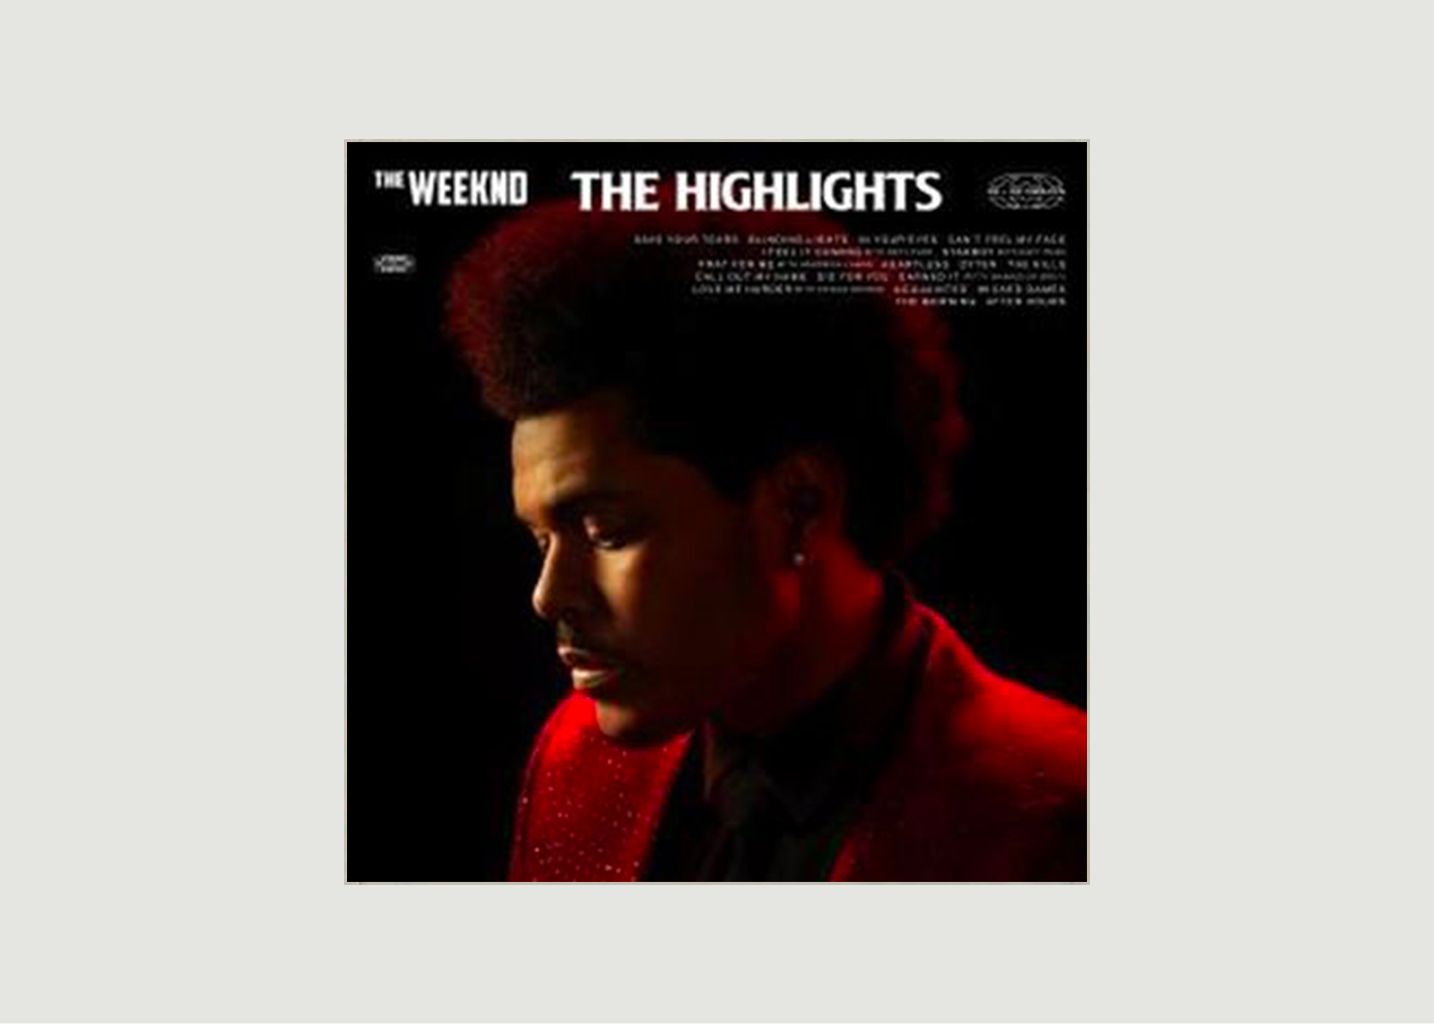 Vinyle The Highlights The Weeknd - La vinyl-thèque idéale